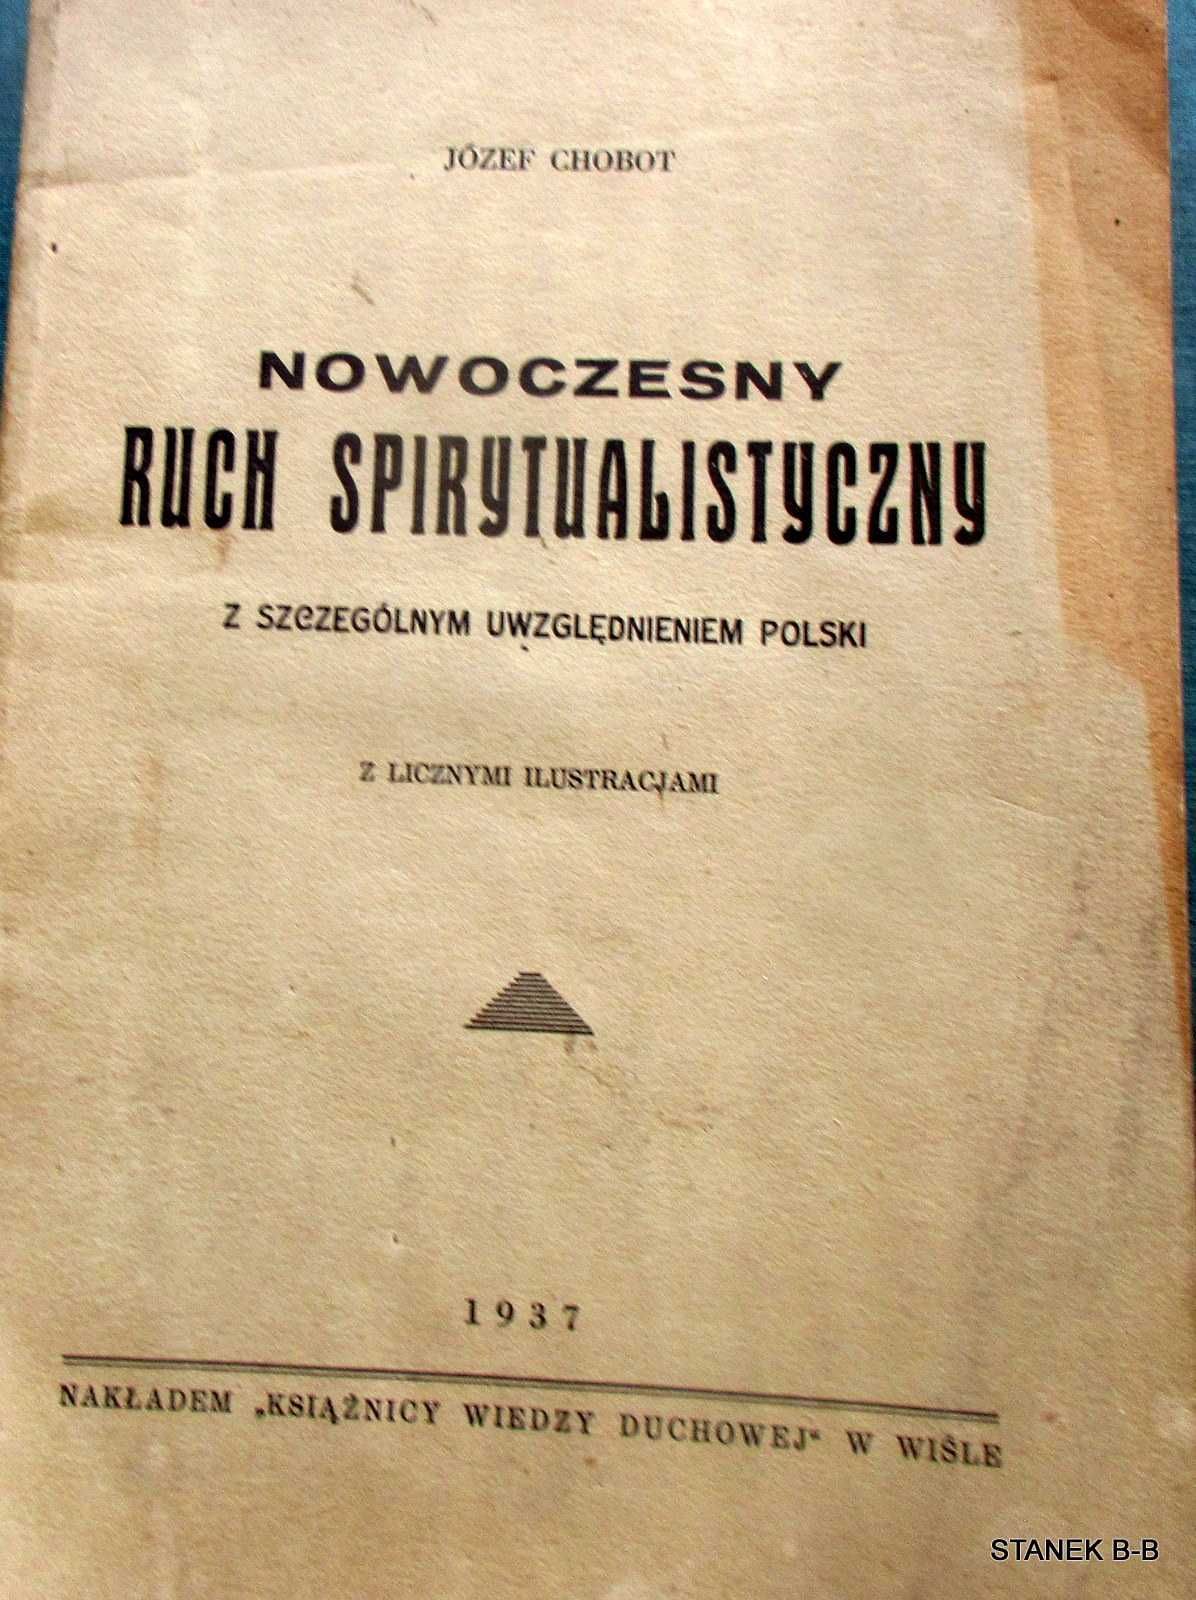 Józef Chobot Nowoczesny ruch spirytualistyczny z 1937 rok